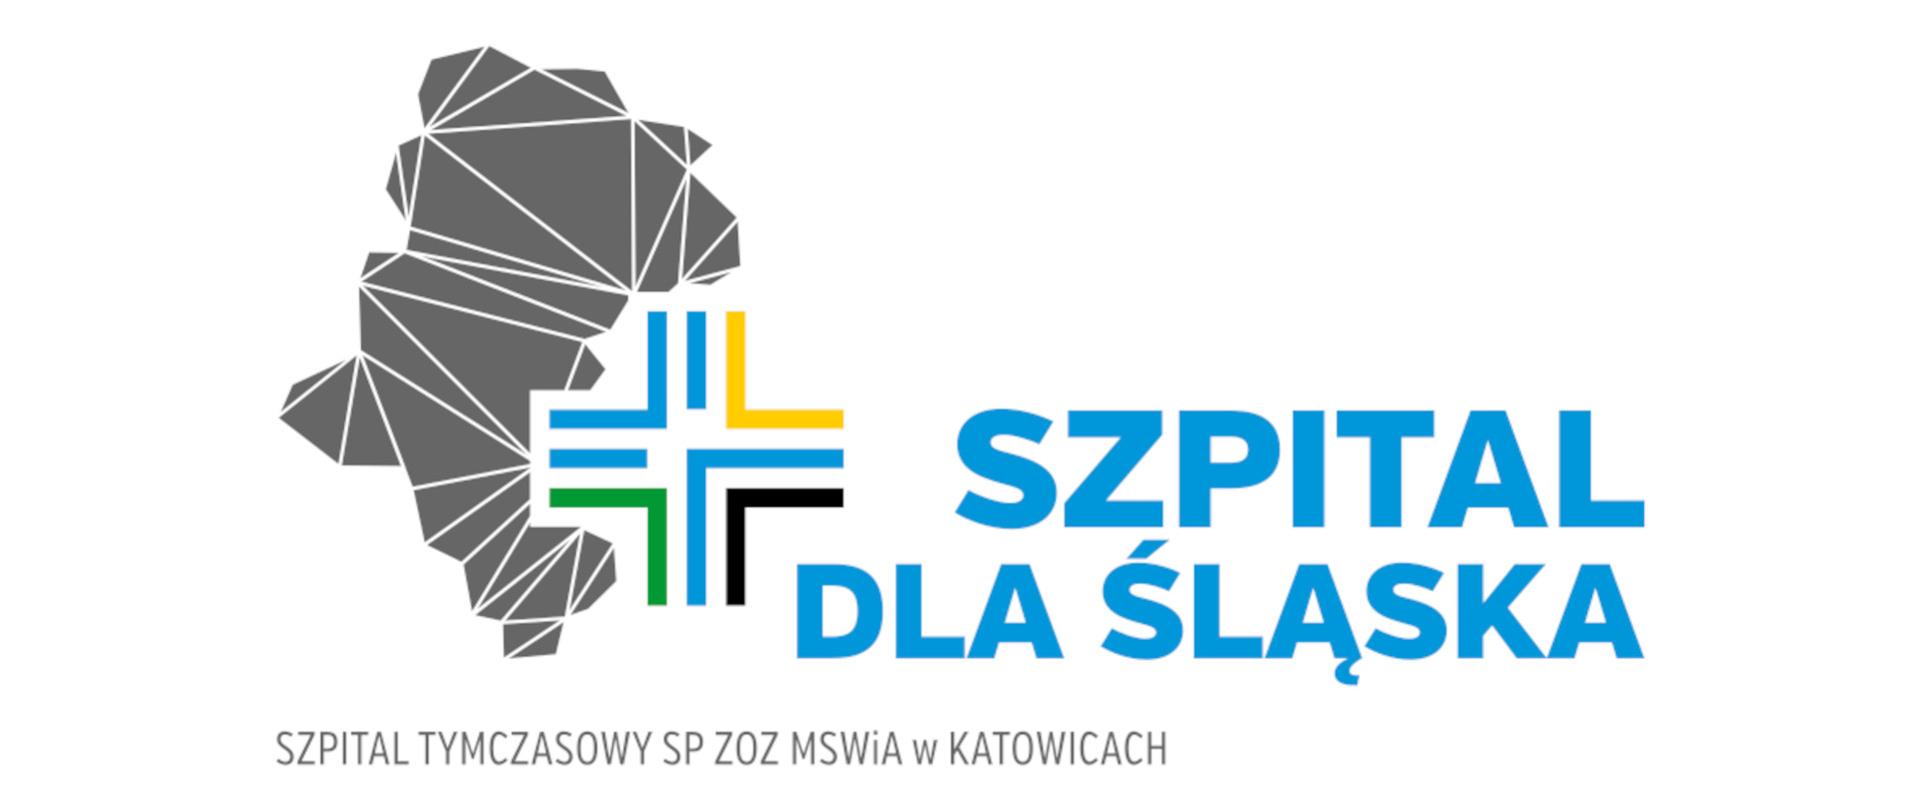 Ilustracja przedstawia na biały tle, od lewej logo szpitala tymczasowego SP ZOZ MSWiA w Katowicach. Po prawej stronie niebieski napis szpital dla śląska. Pod spodem napis o treści szpital tymczasowy SP ZOZ MSWiA w Katowicach